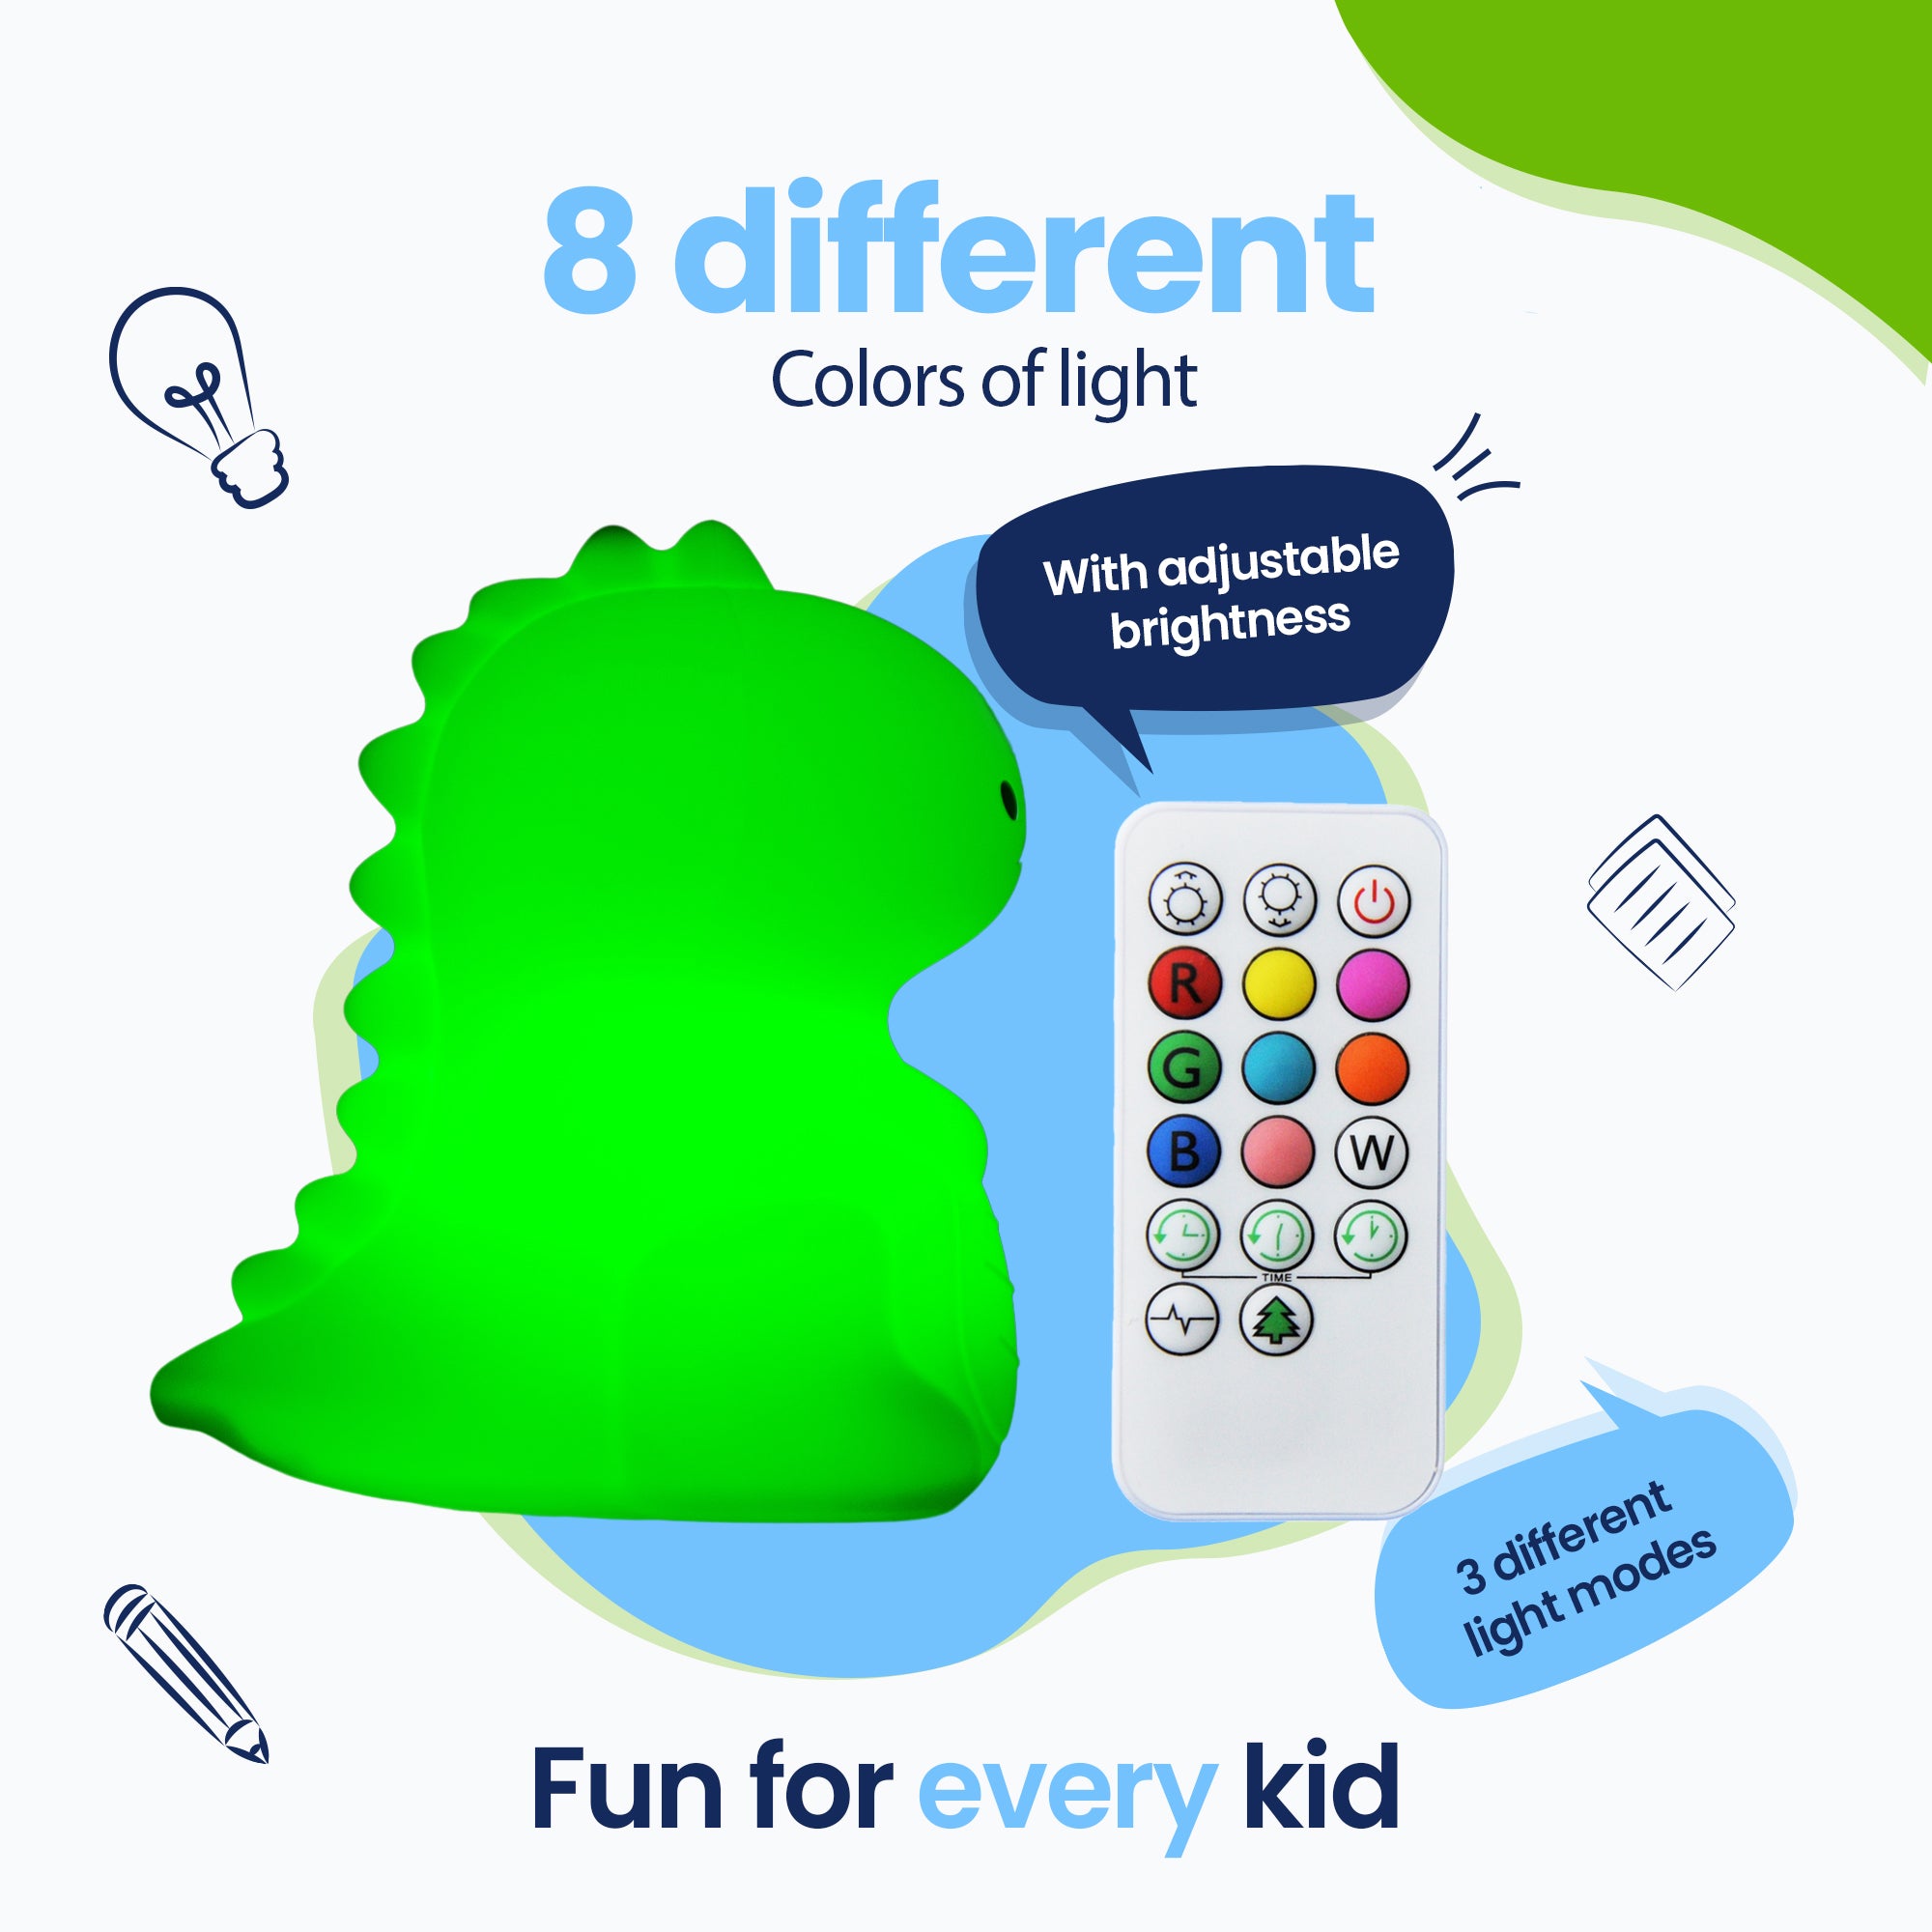 8 diversi colori di luce - 3 diverse modalità di luce - Divertimento per ogni bambino